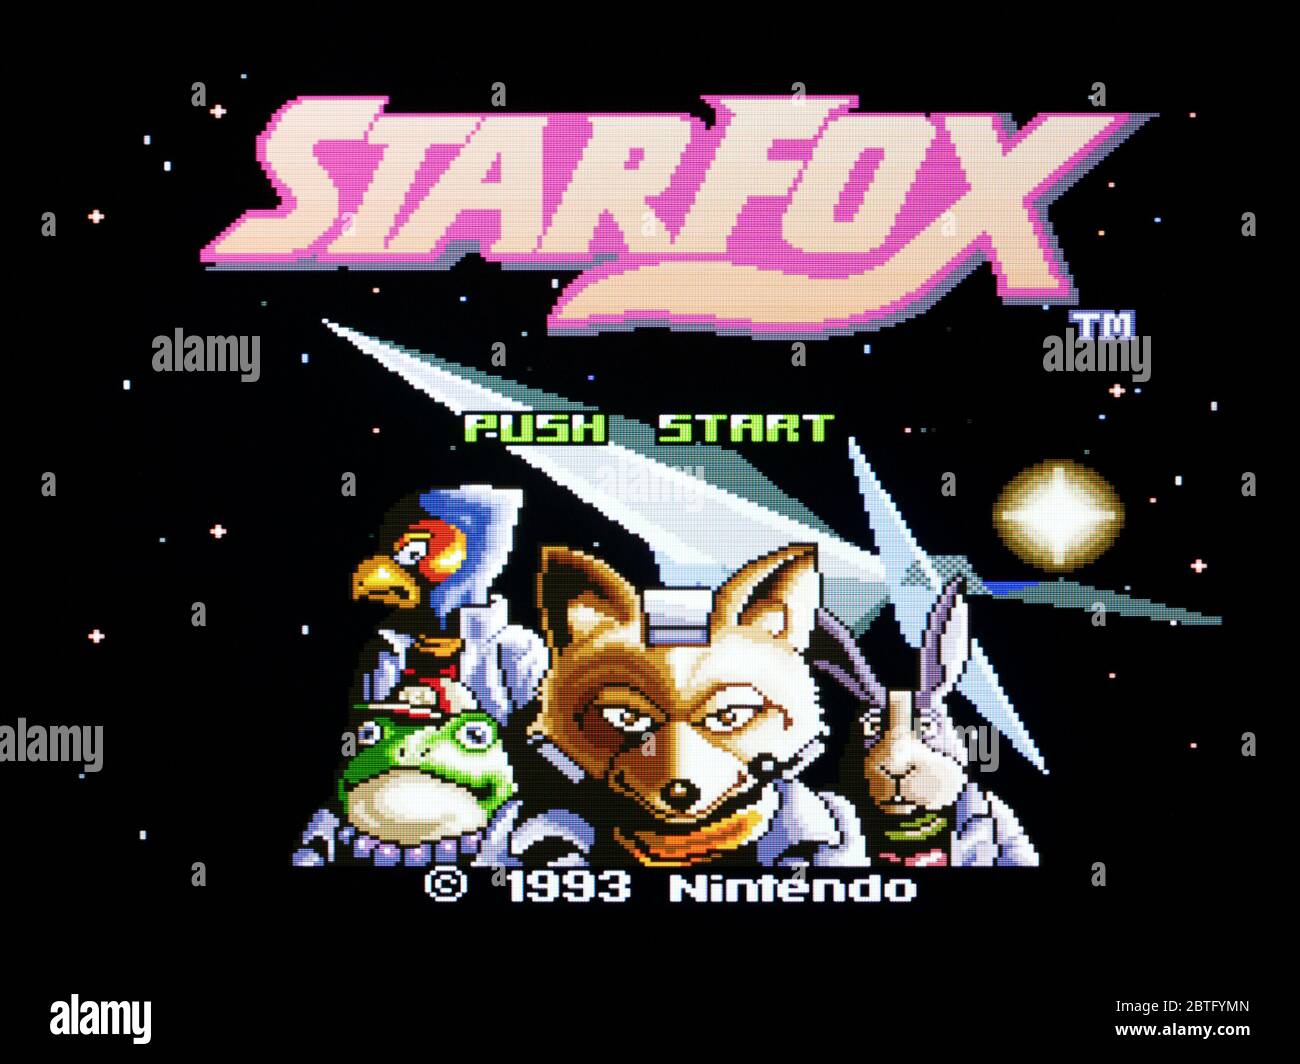 69 Star Fox Wallpaper HD